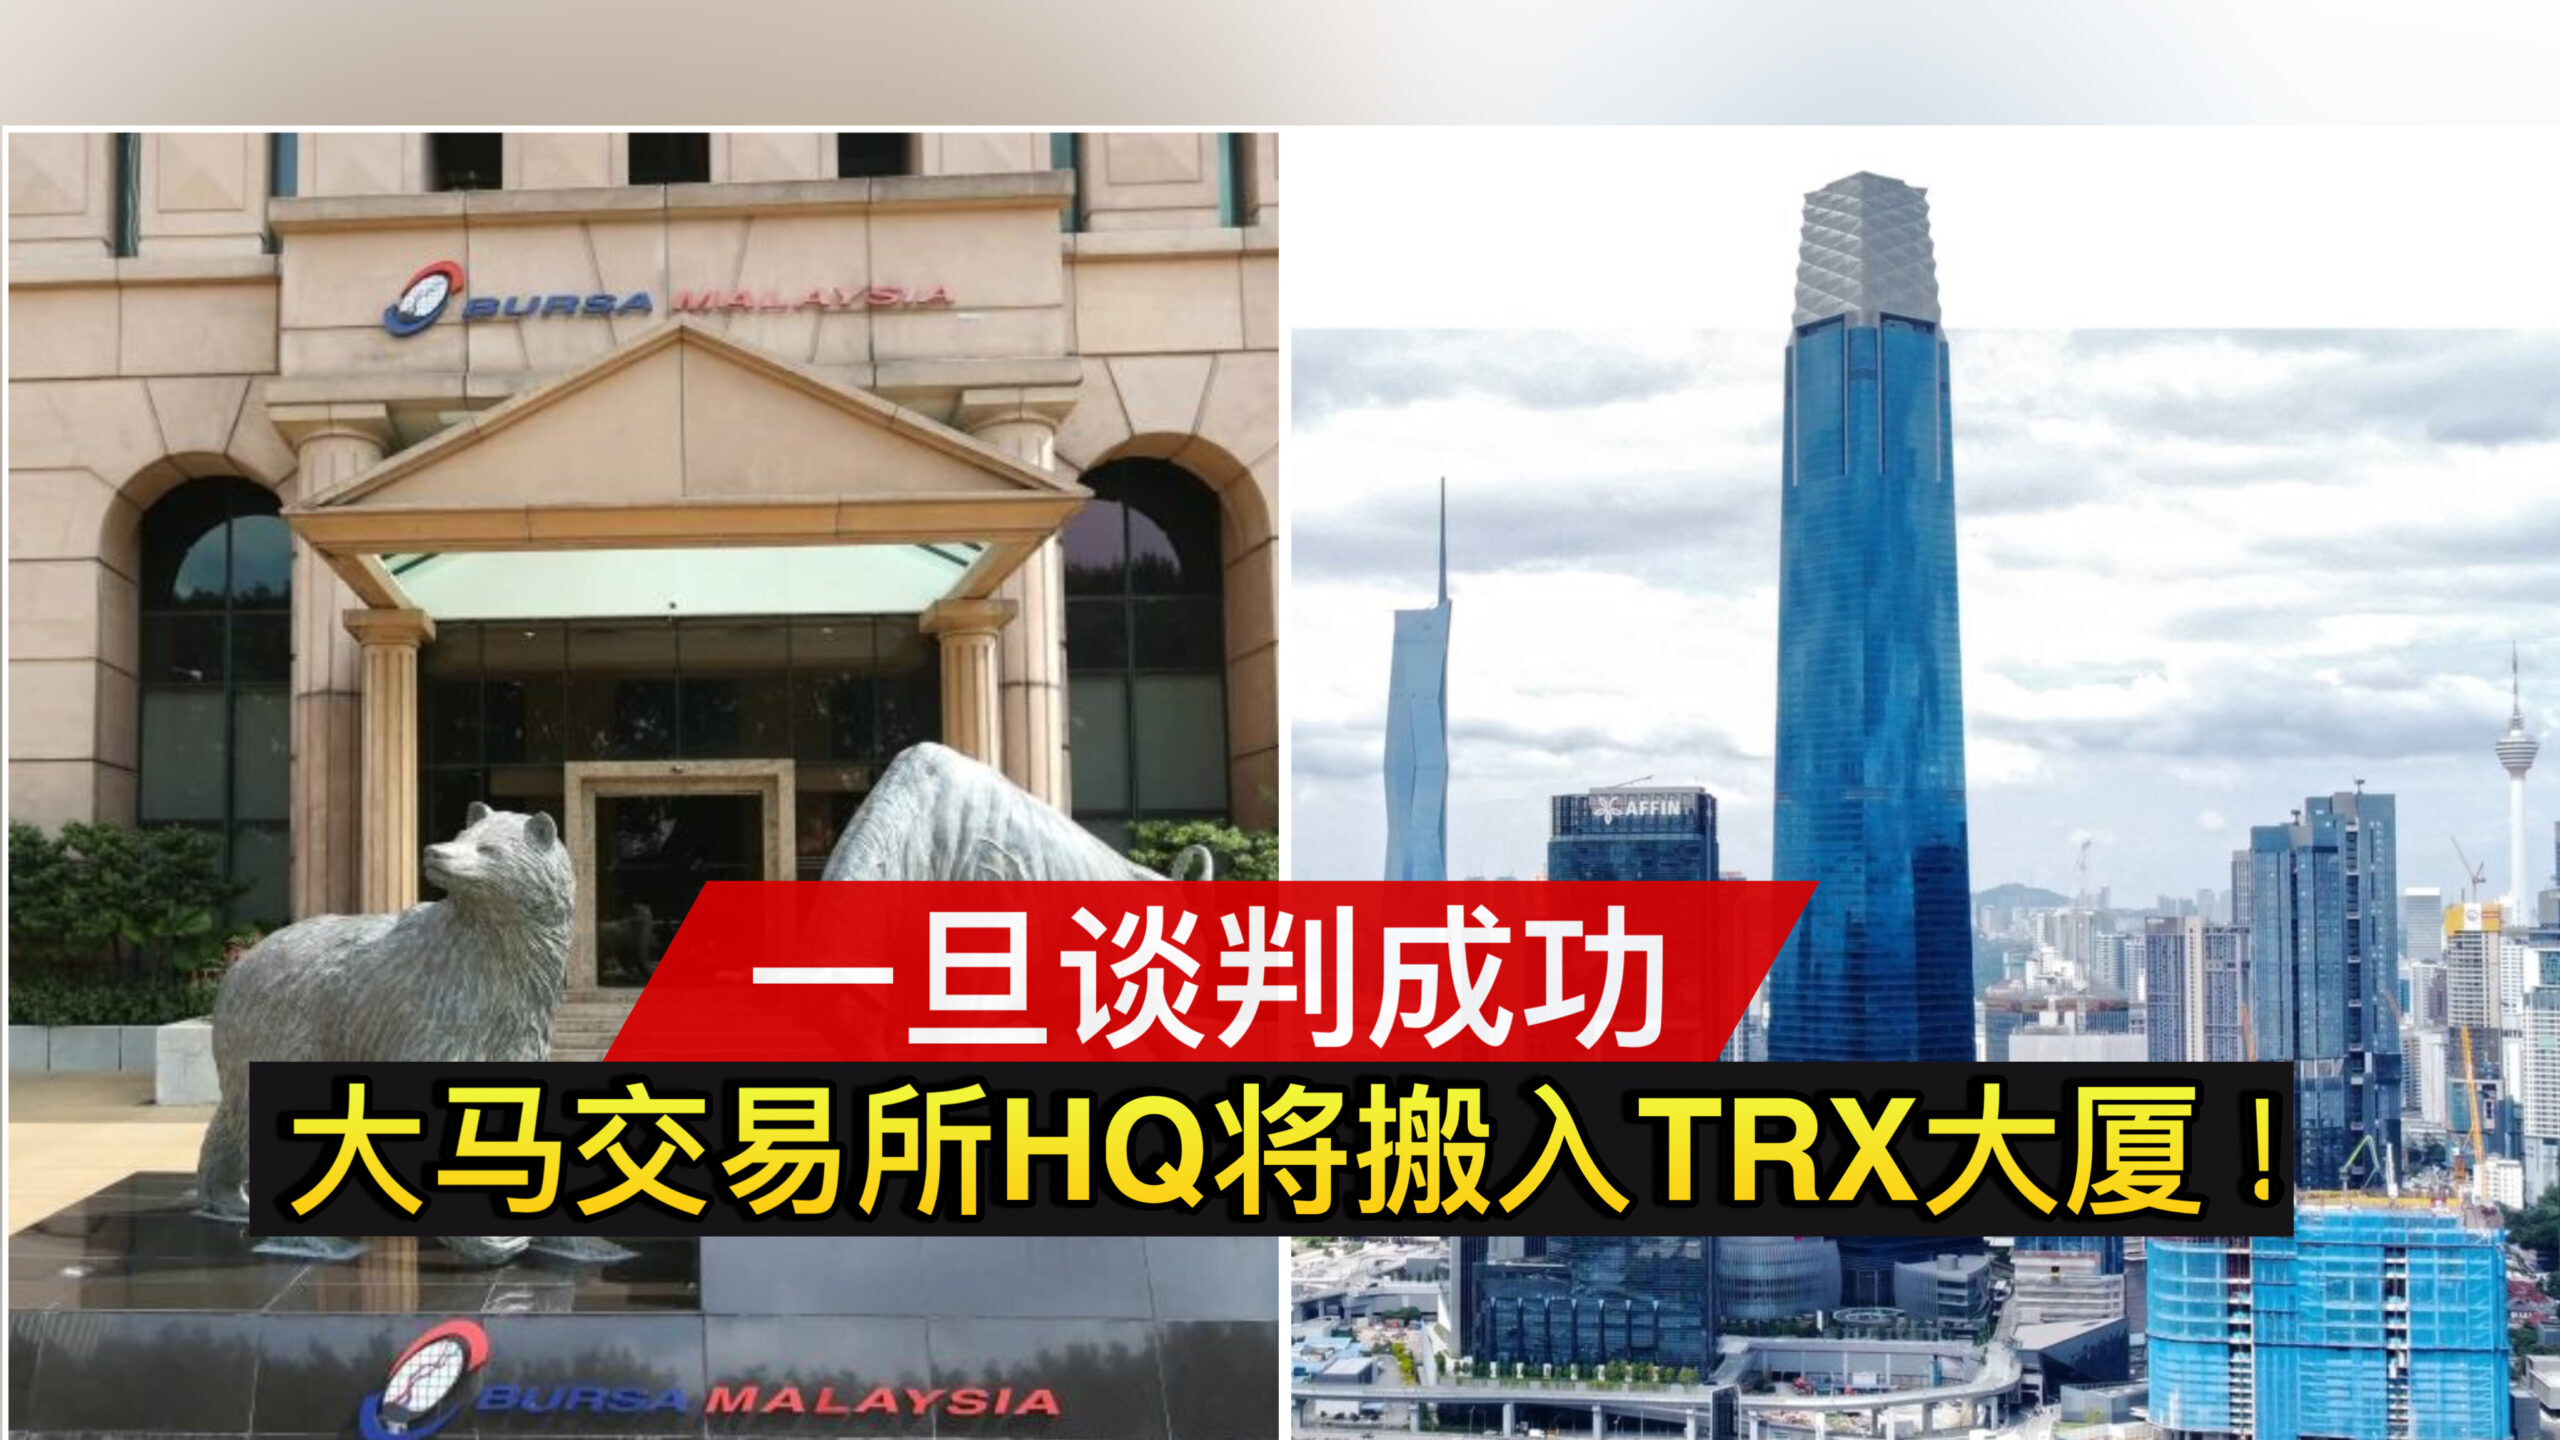 一旦谈判成功 大马交易所HQ将搬入TRX大厦！